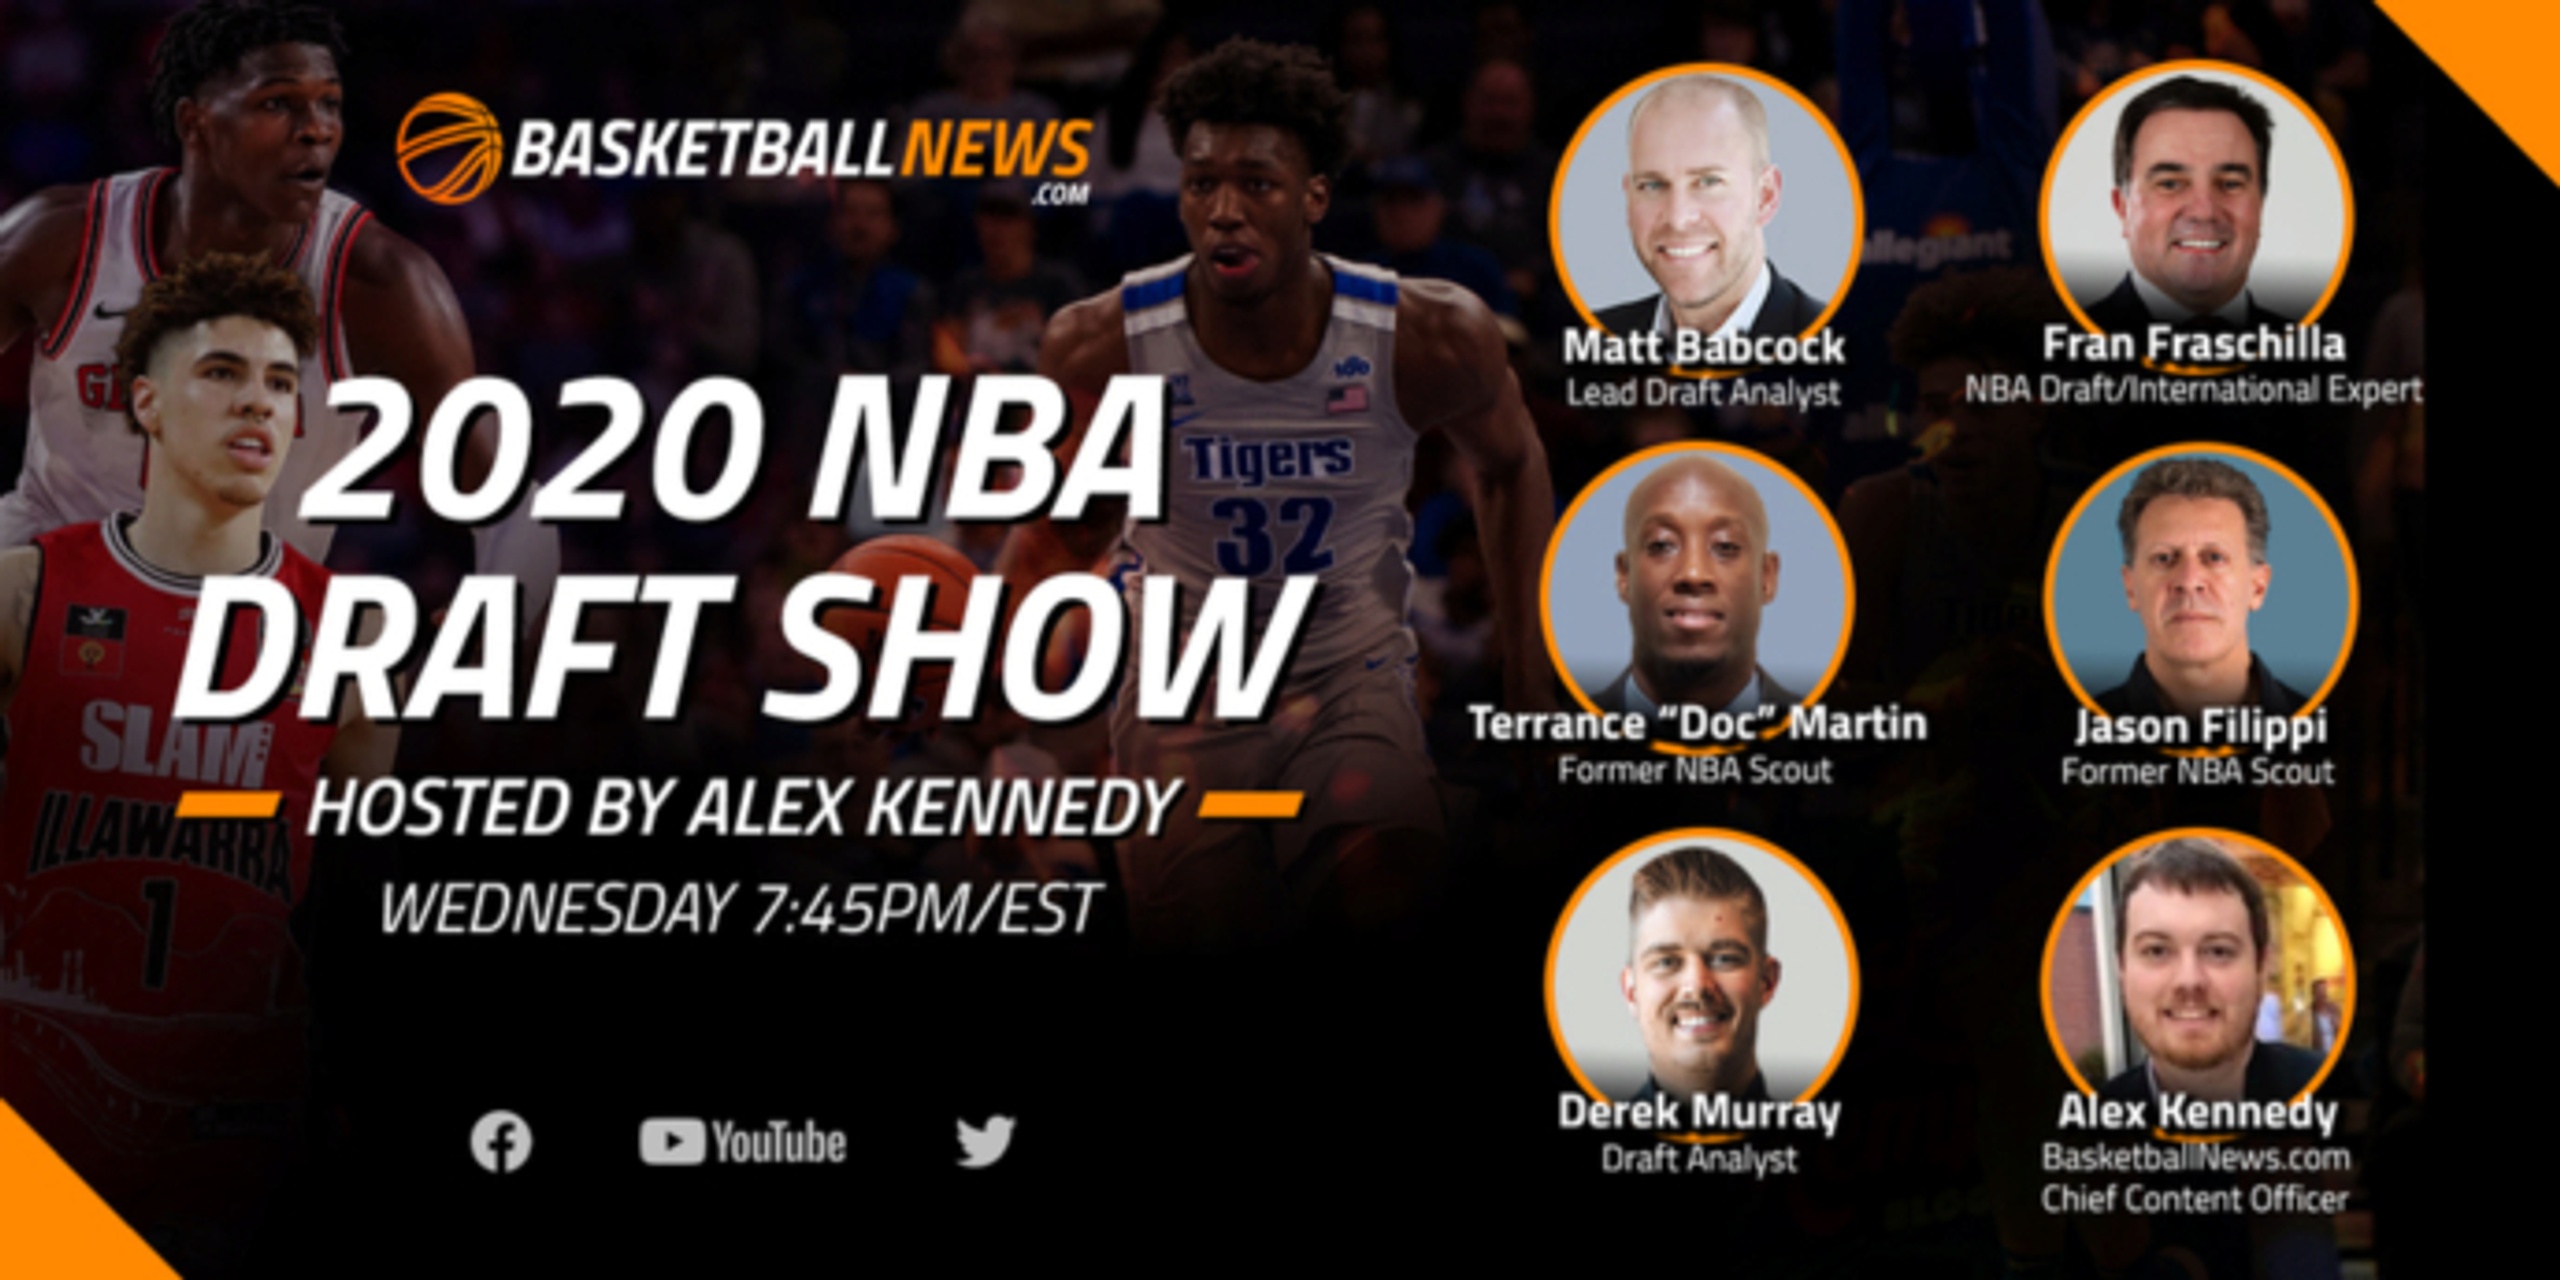 BasketballNews.com's 2020 NBA Draft Live-Stream